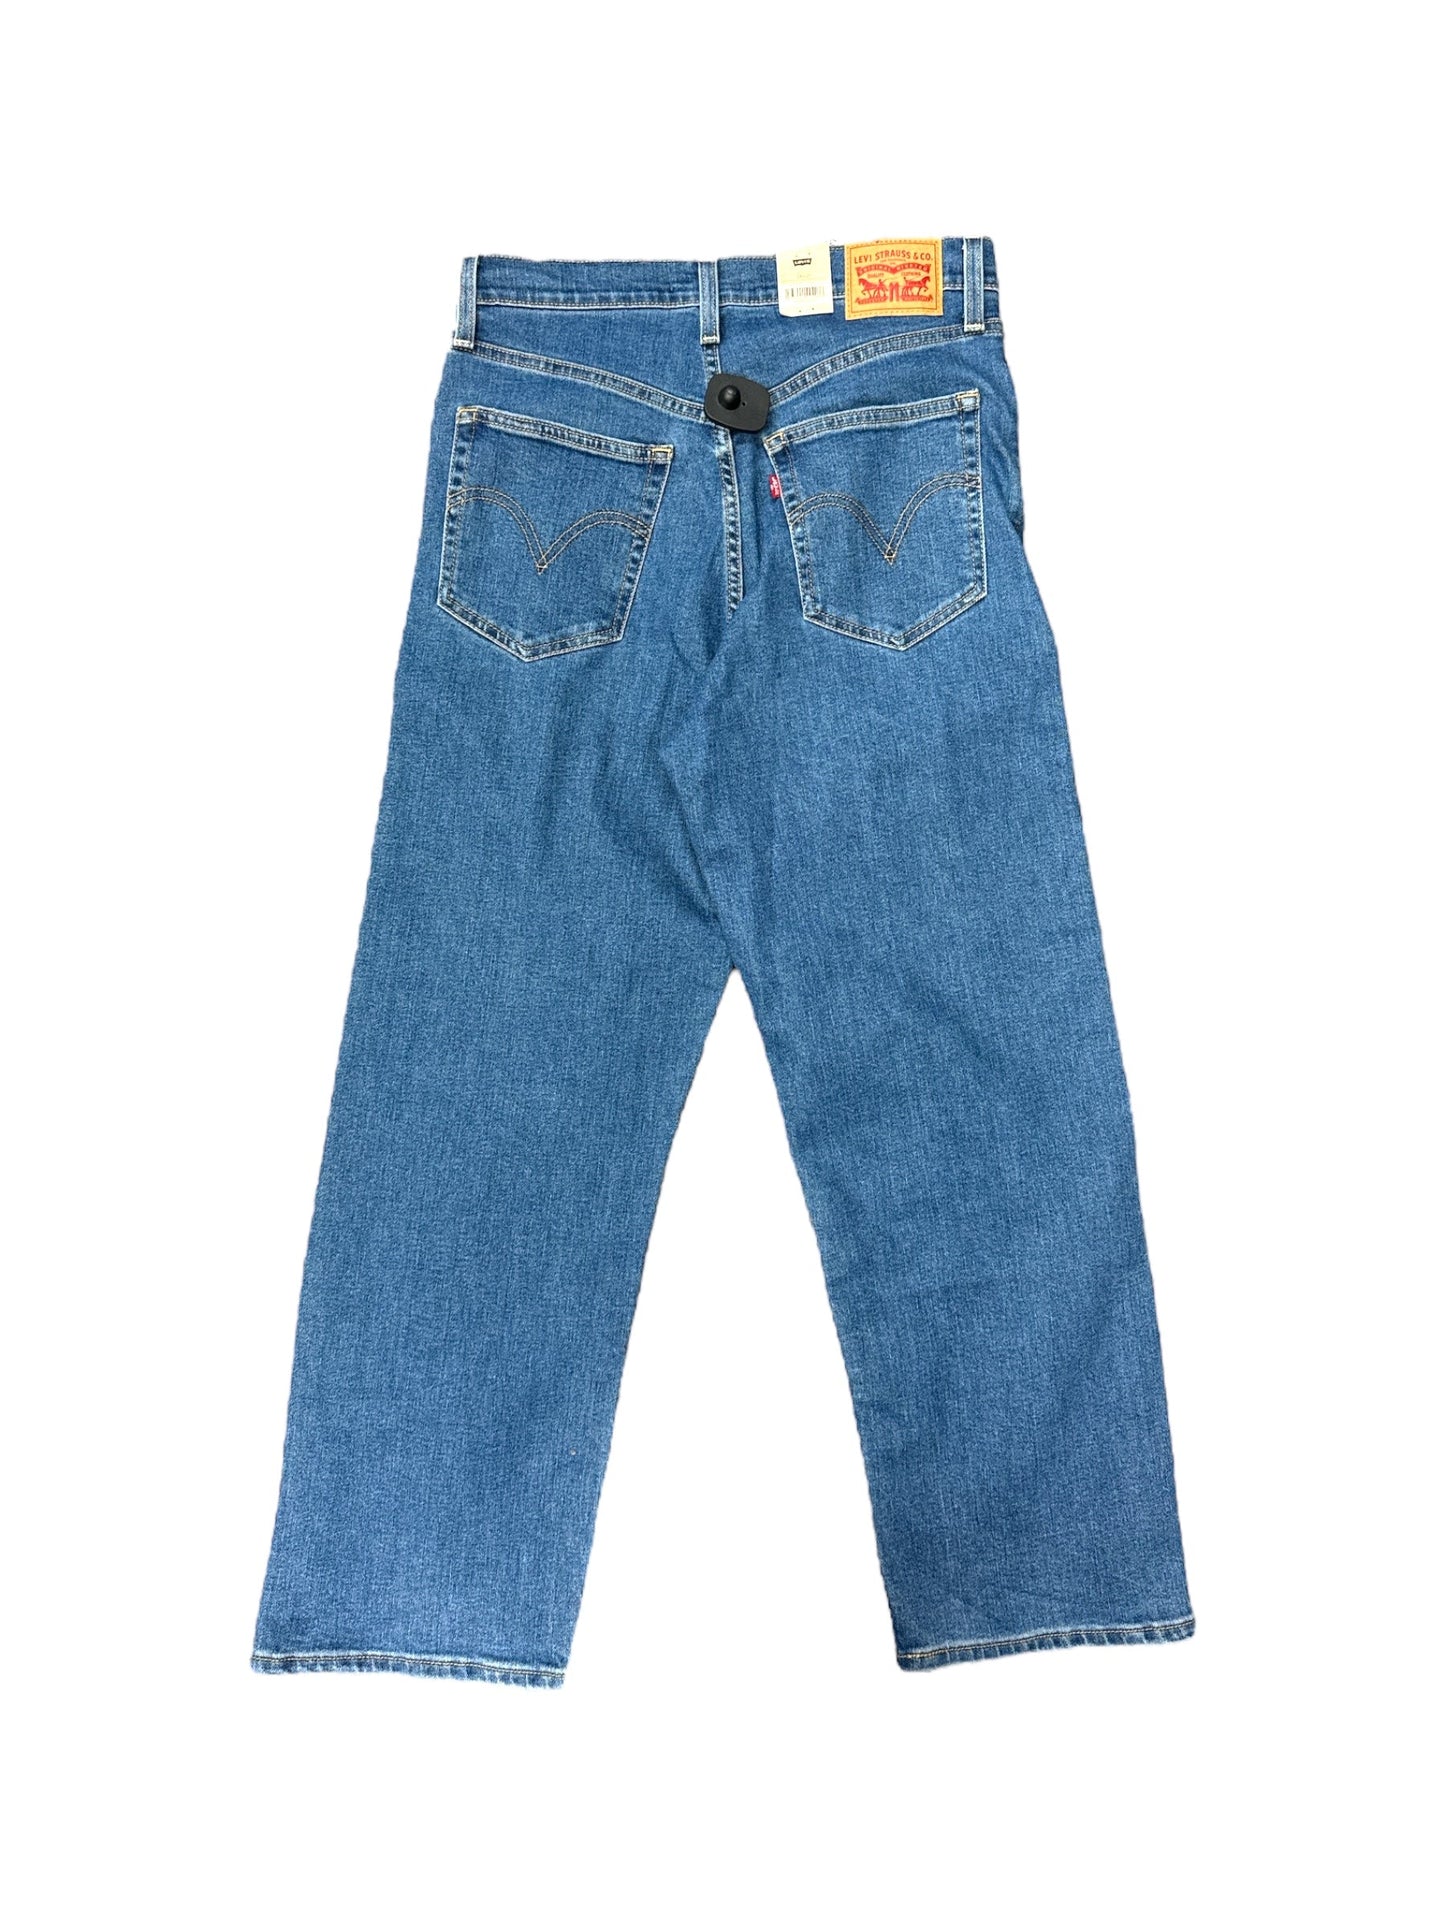 Blue Denim Jeans Boyfriend Levis, Size 8